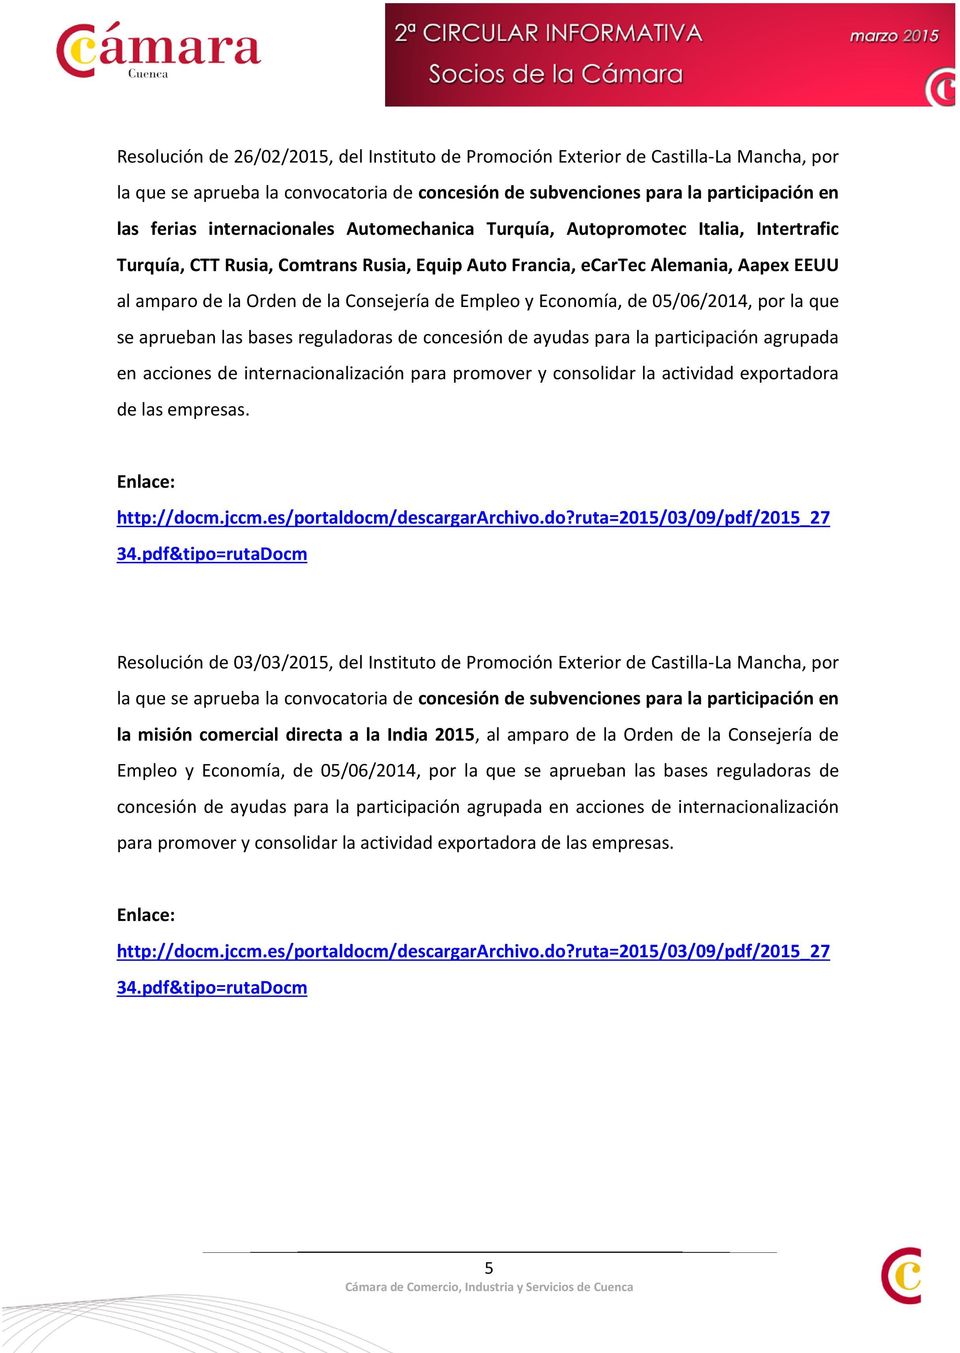 Empleo y Economía, de 05/06/2014, por la que se aprueban las bases reguladoras de concesión de ayudas para la participación agrupada en acciones de internacionalización para promover y consolidar la